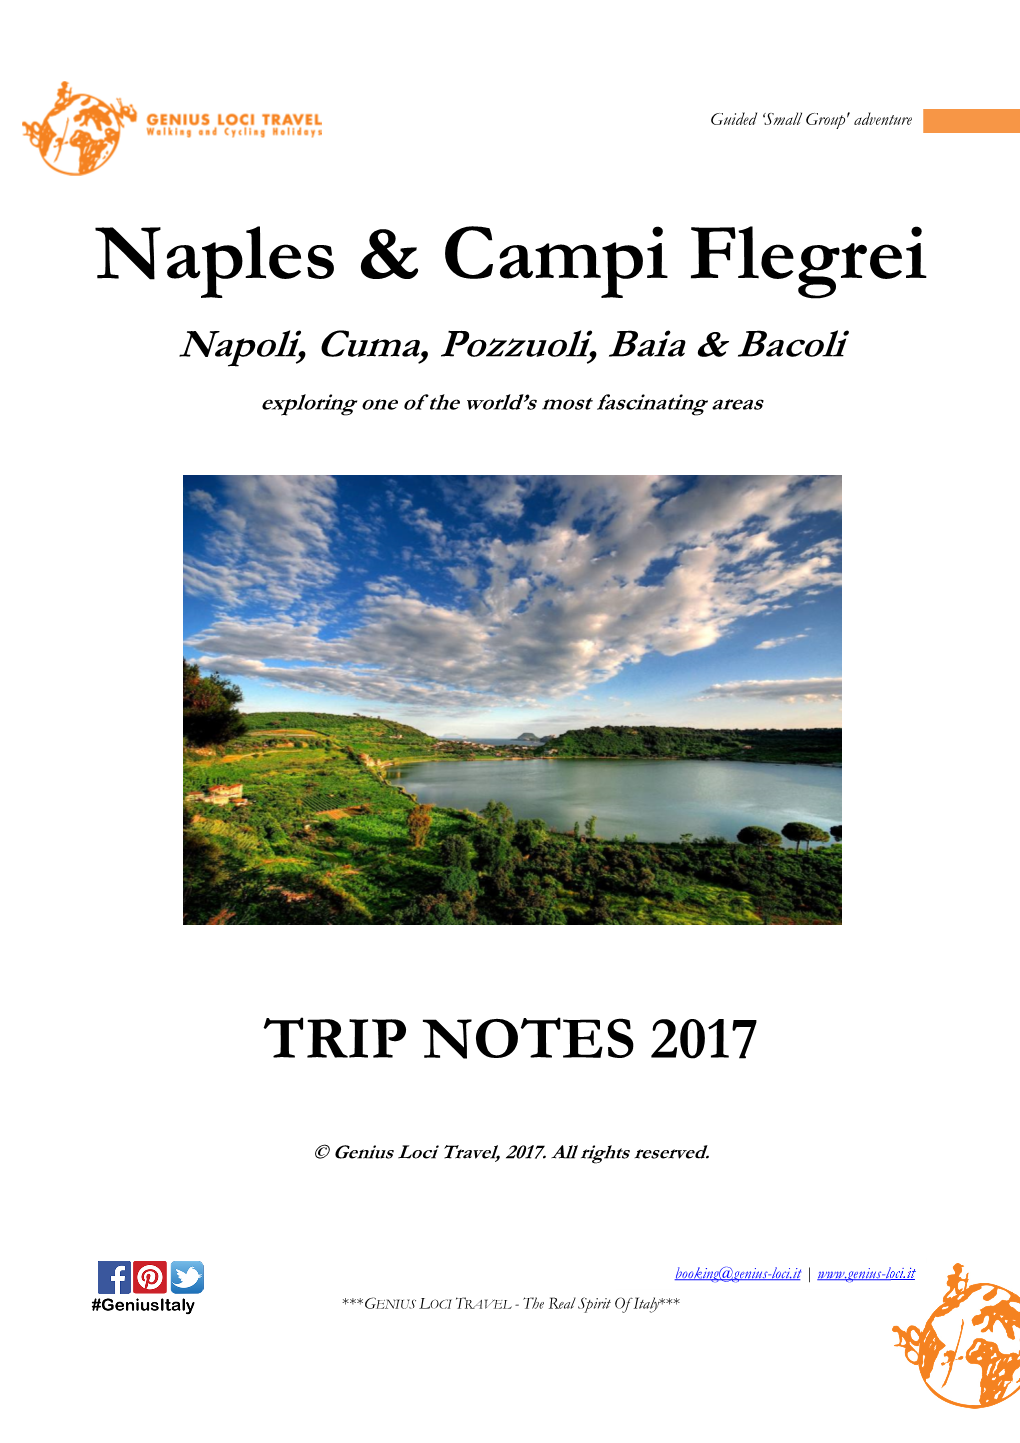 Naples & Campi Flegrei